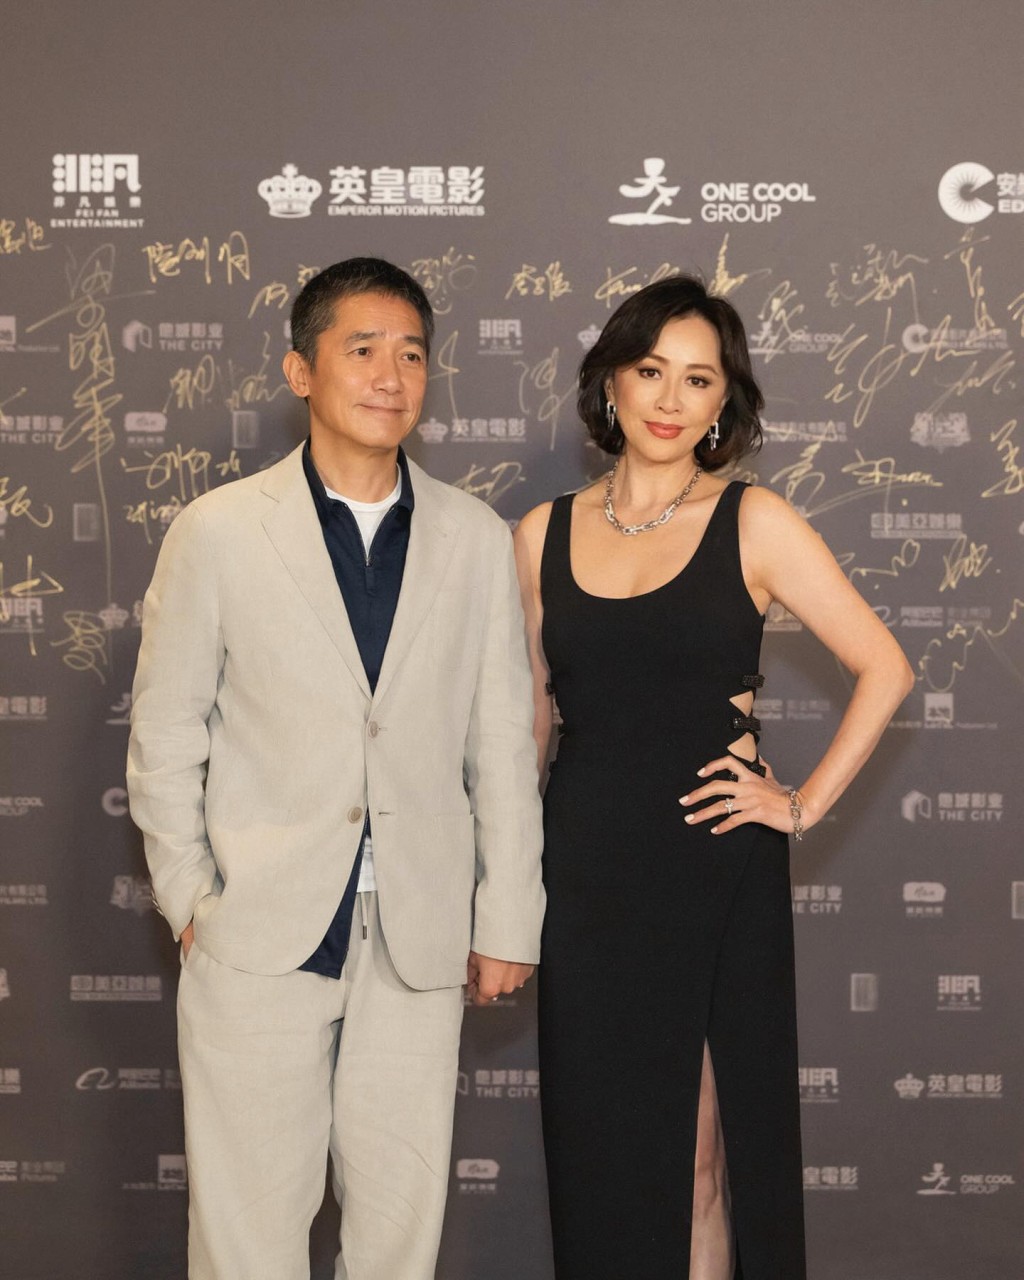 梁朝伟在导演会颁奖礼上凭《金手指》夺得「最佳男主角」， ​刘嘉玲陪伴老公出席外，还担任颁奖嘉宾。  ​